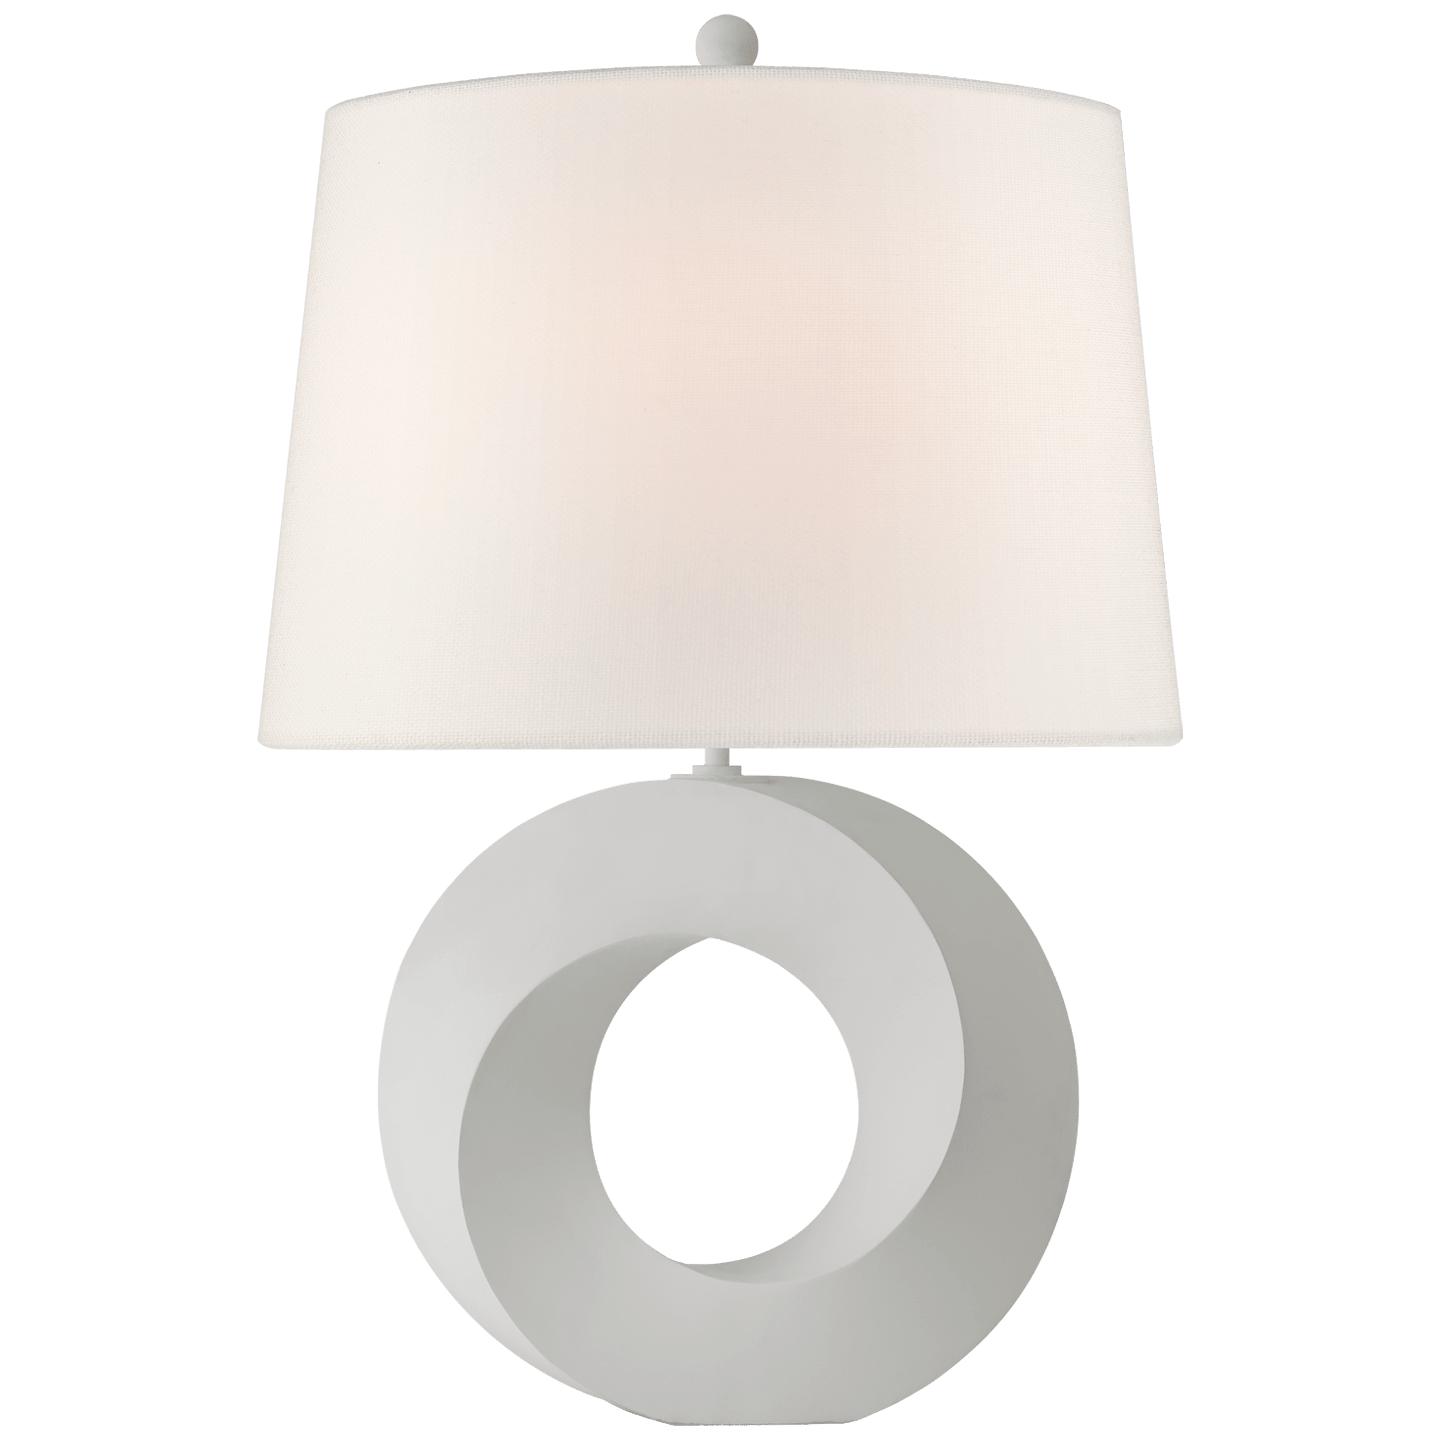 Купить Настольная лампа Mobius Medium Table Lamp в интернет-магазине roooms.ru